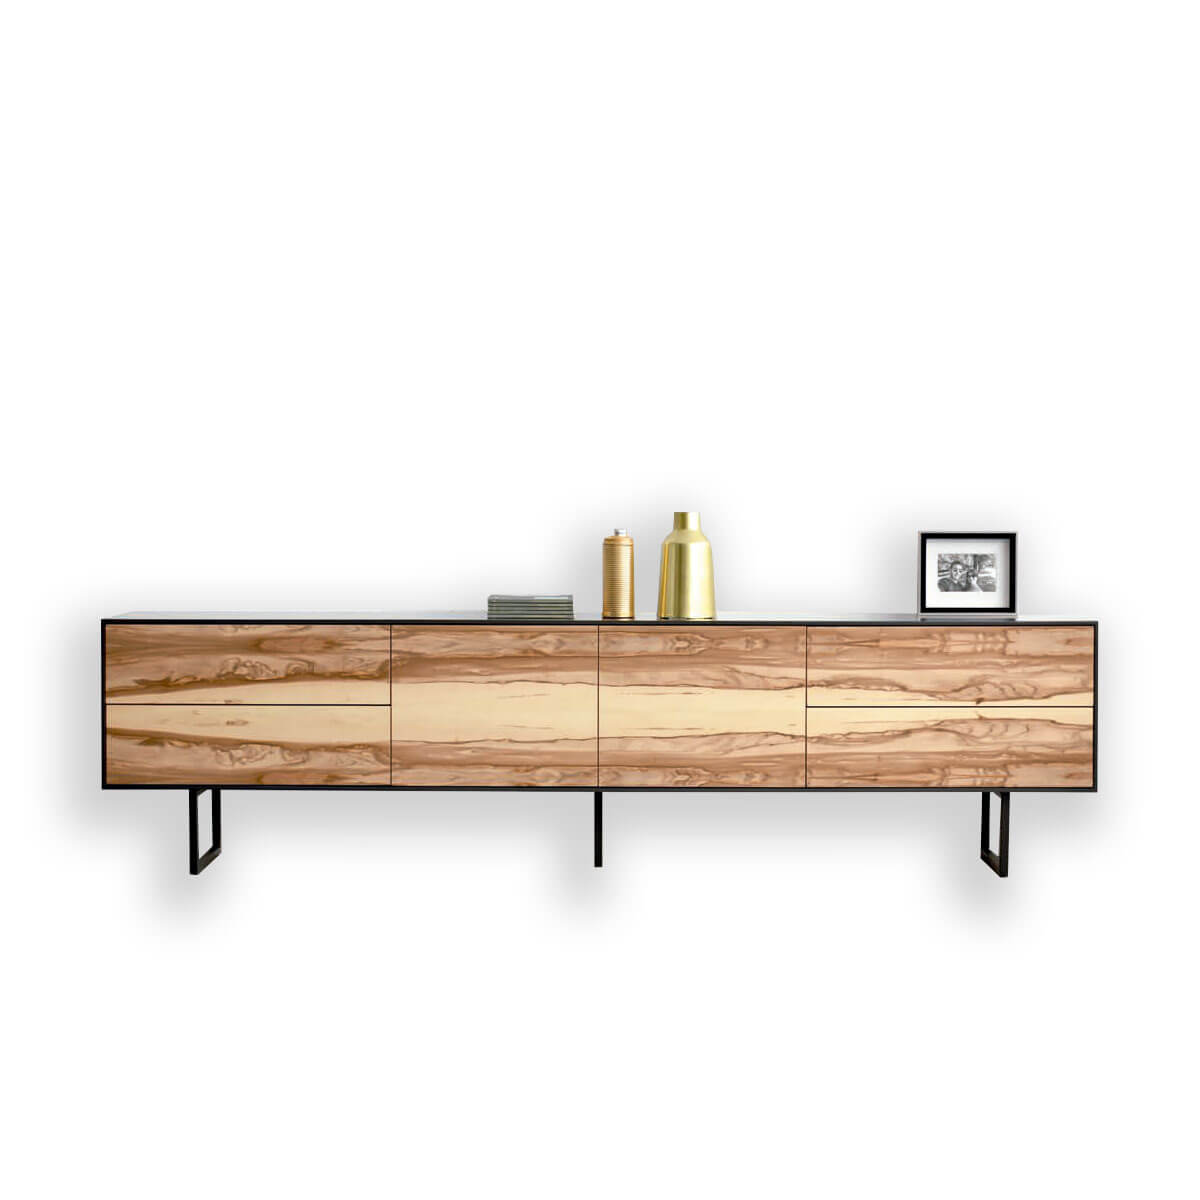 Mesita madera blanca y natural - Artikalia - Muebles de diseño